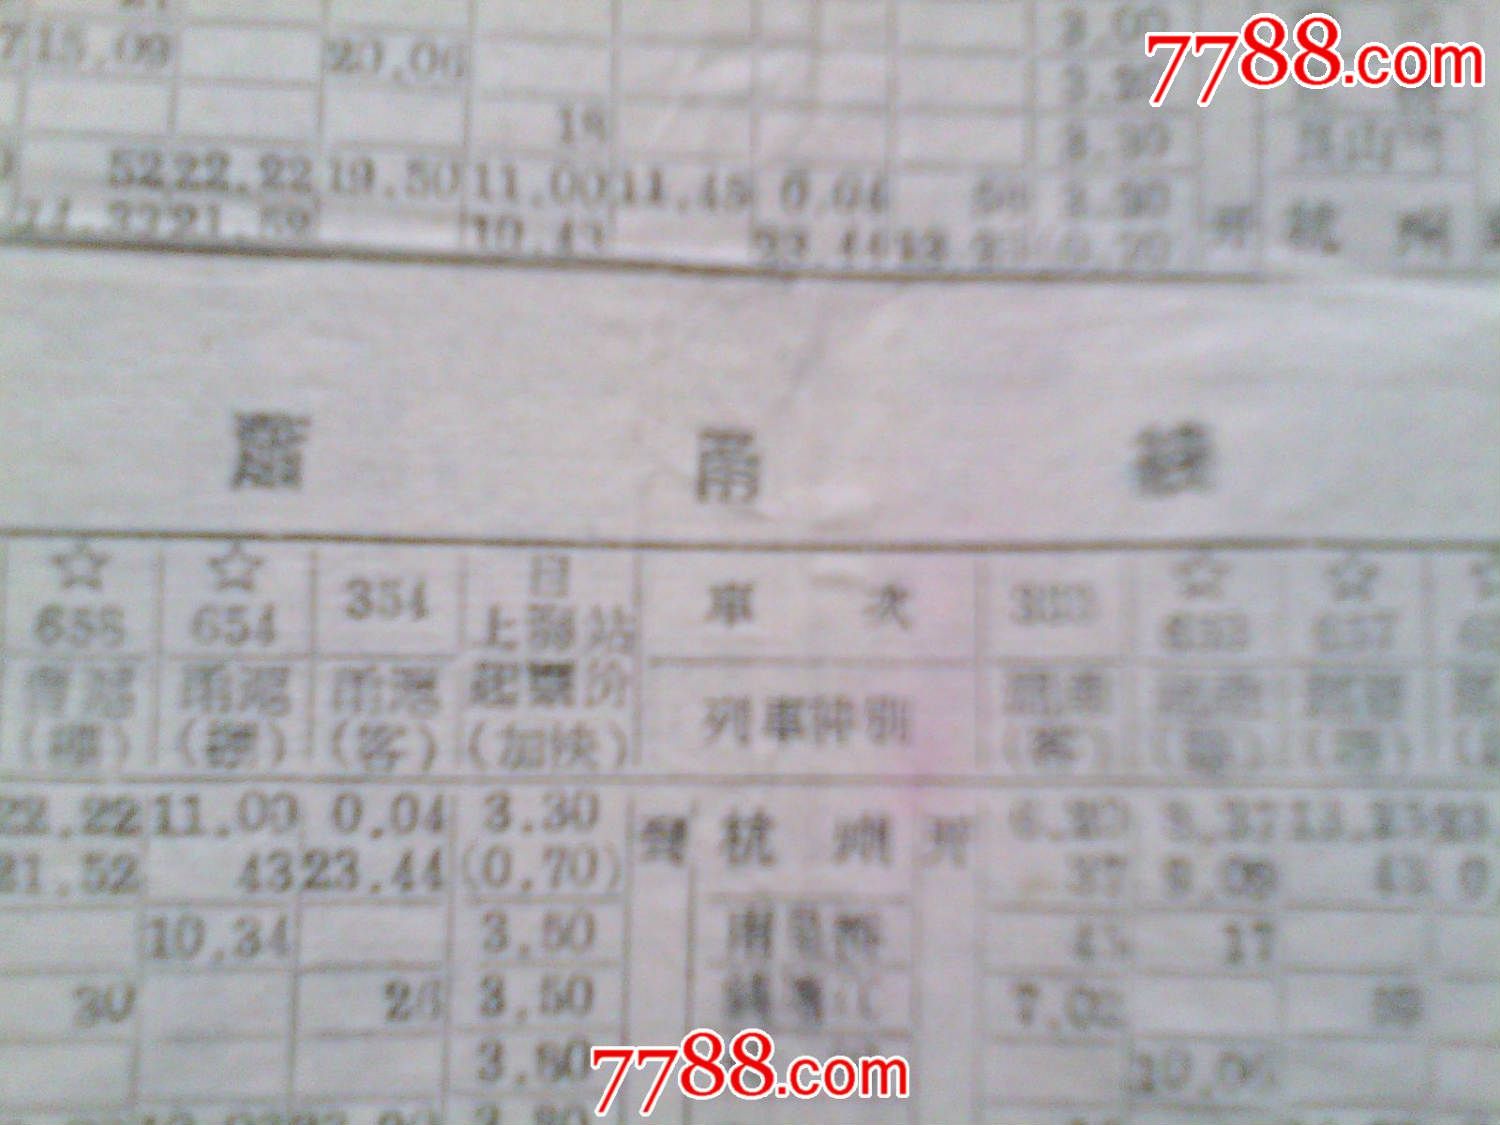 64春节火车时刻表-价格:150元-se31107806-其